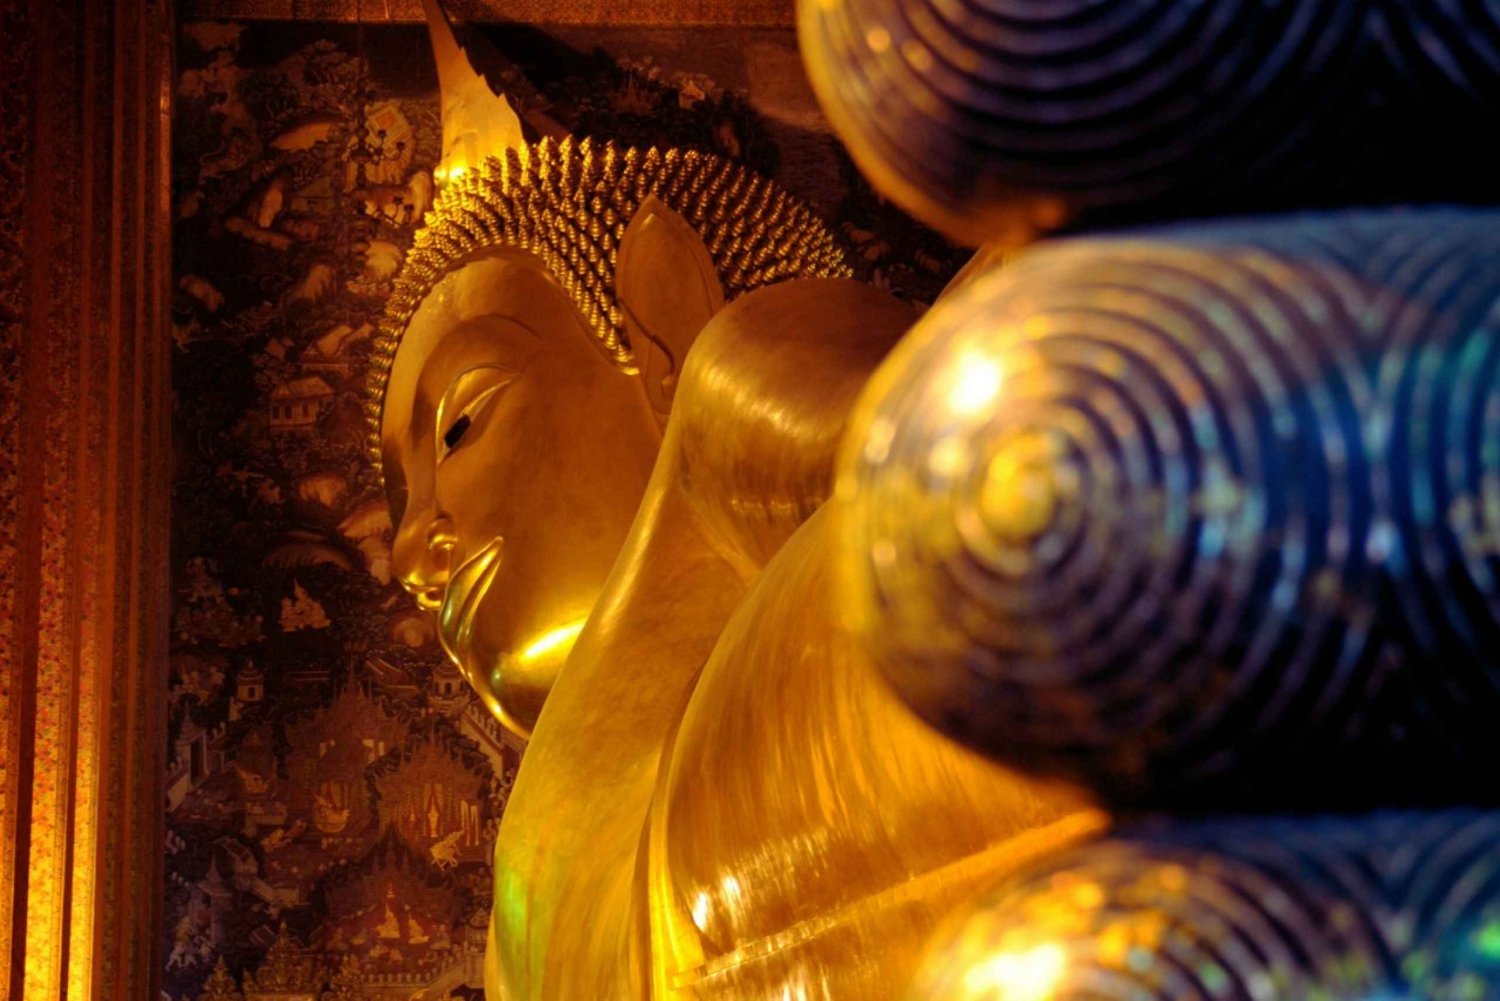 Bangkok: Najważniejsze atrakcje z Wielkim Pałacem i obowiązkowymi świątyniami